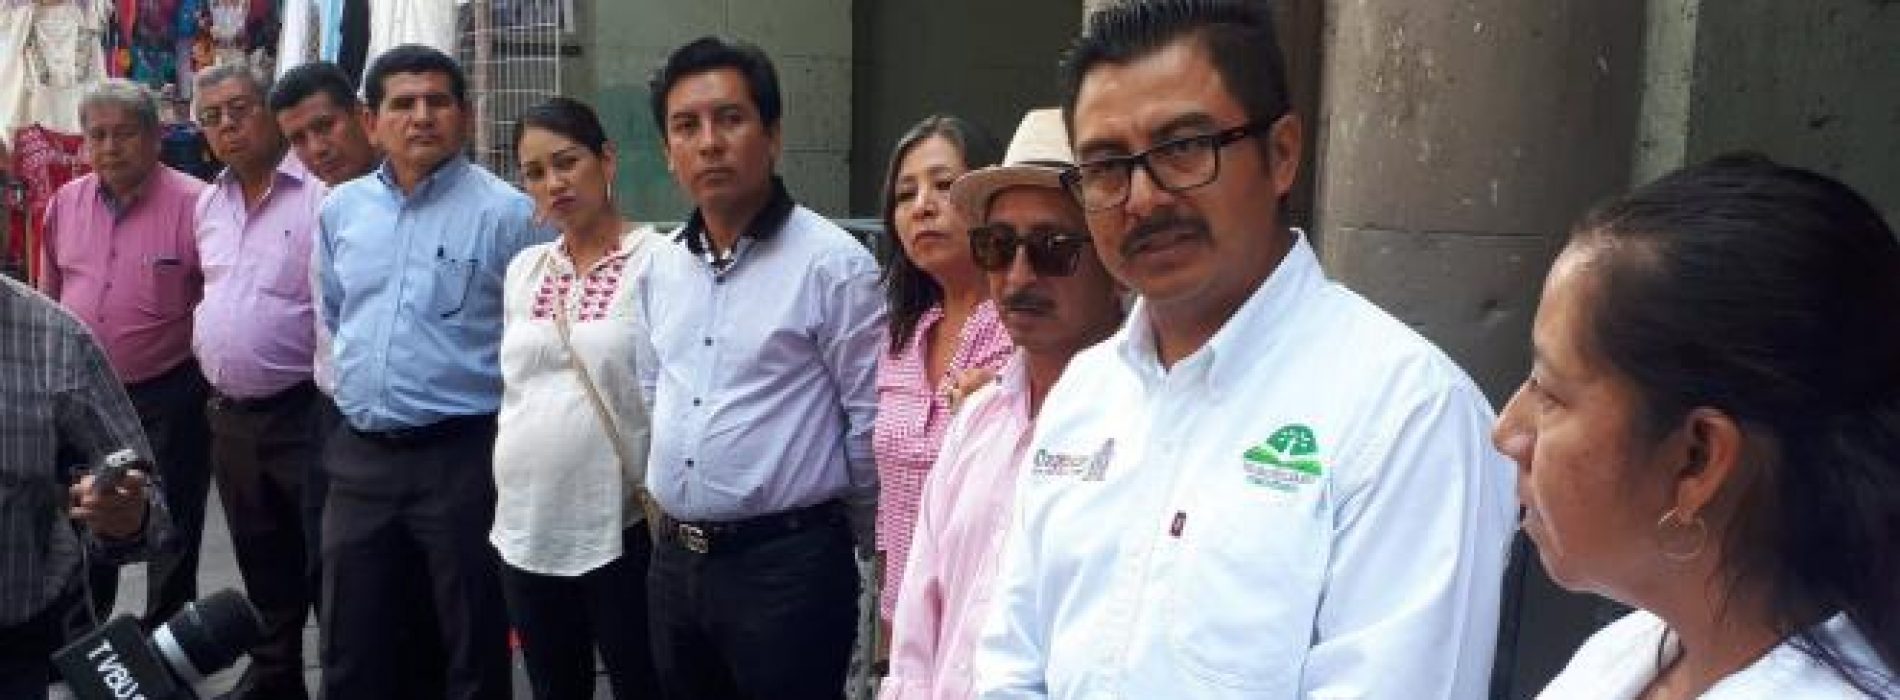 Telebachilleratos amagan con movilizaciones en Oaxaca